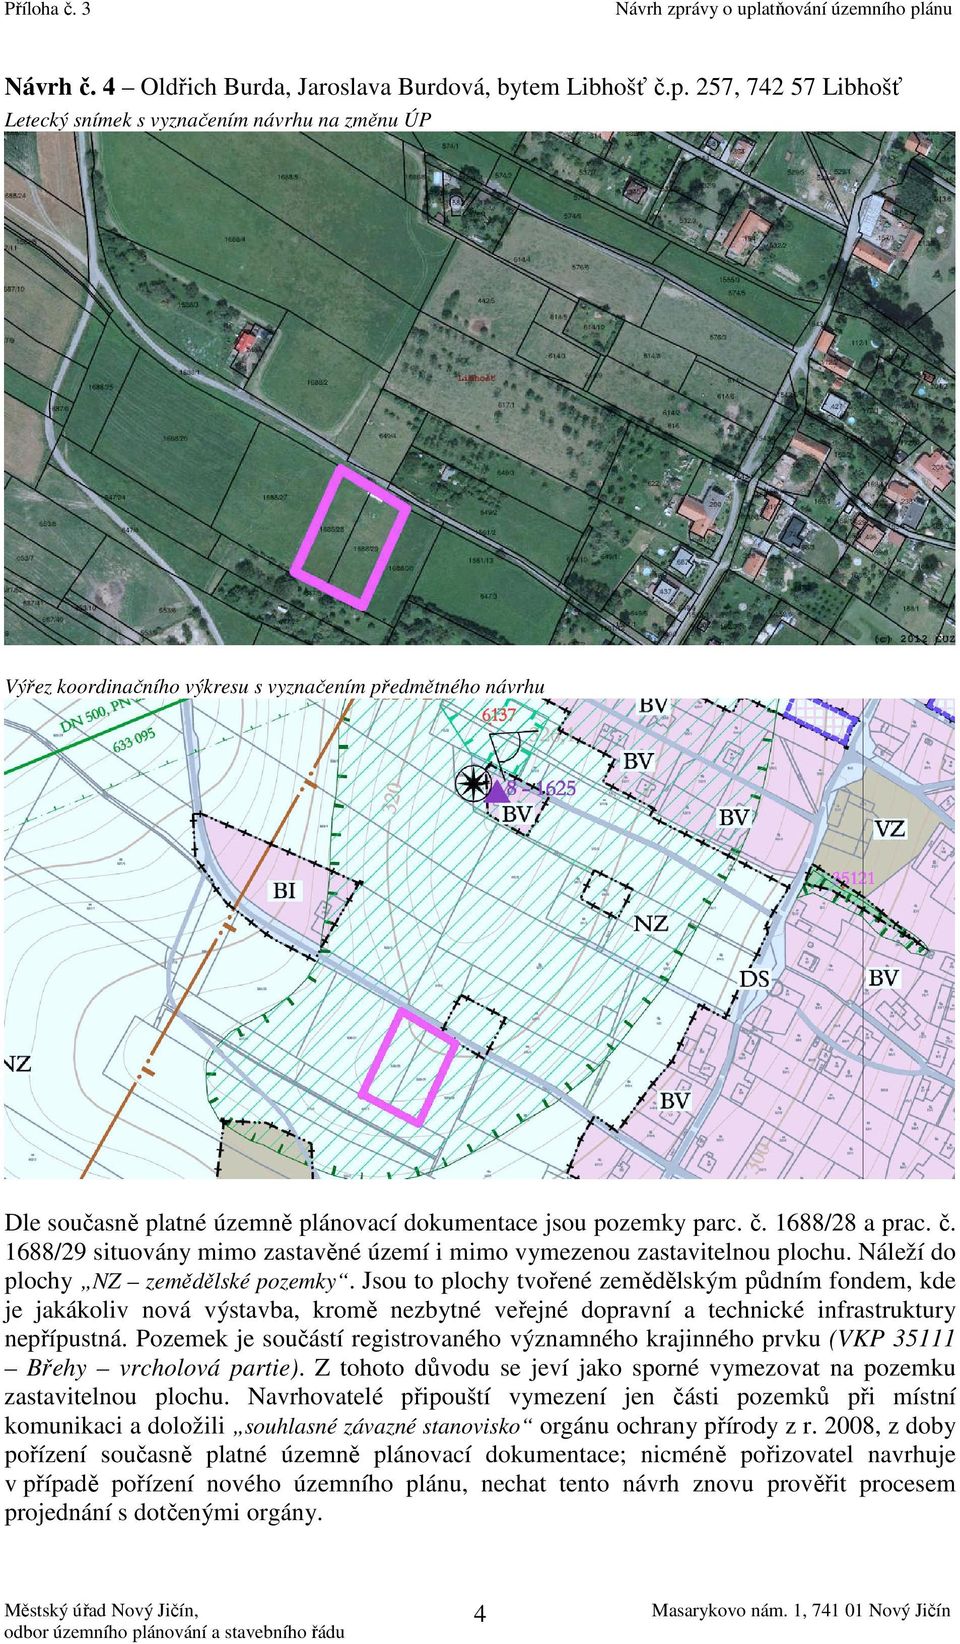 Pozemek je součástí registrovaného významného krajinného prvku (VKP 35111 Břehy vrcholová partie). Z tohoto důvodu se jeví jako sporné vymezovat na pozemku zastavitelnou plochu.